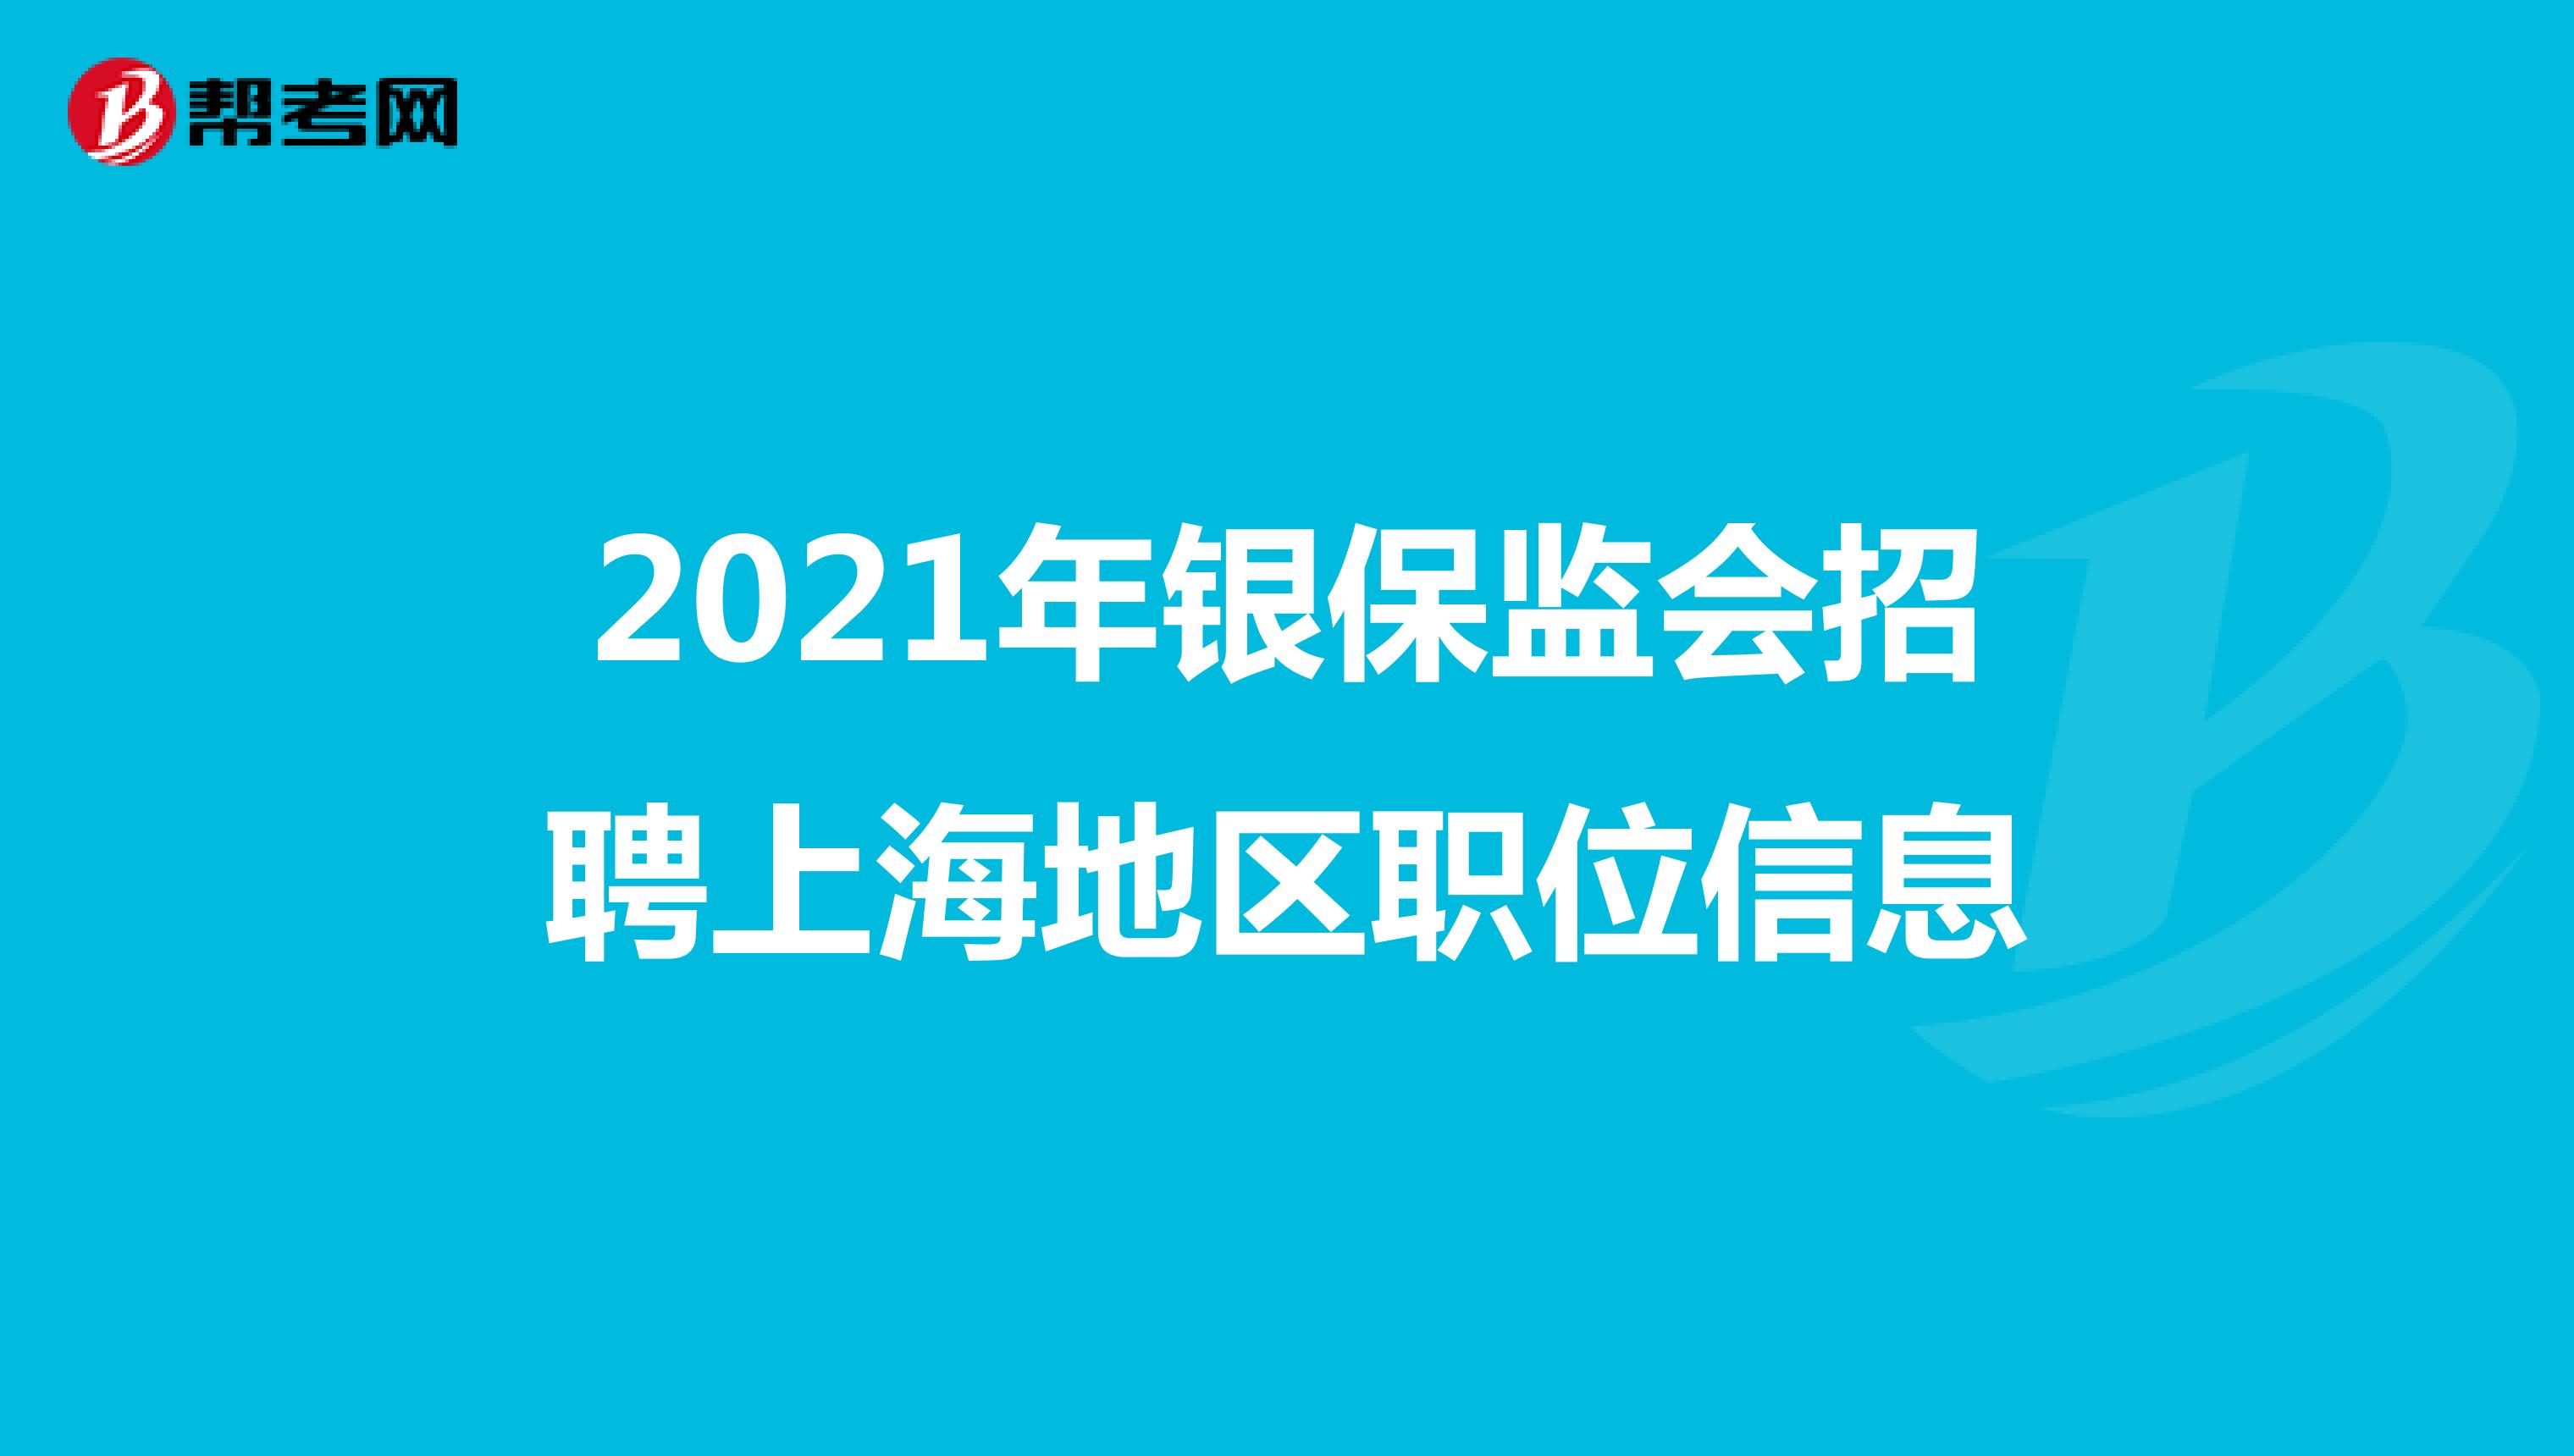 2021年银保监会招聘上海地区职位信息